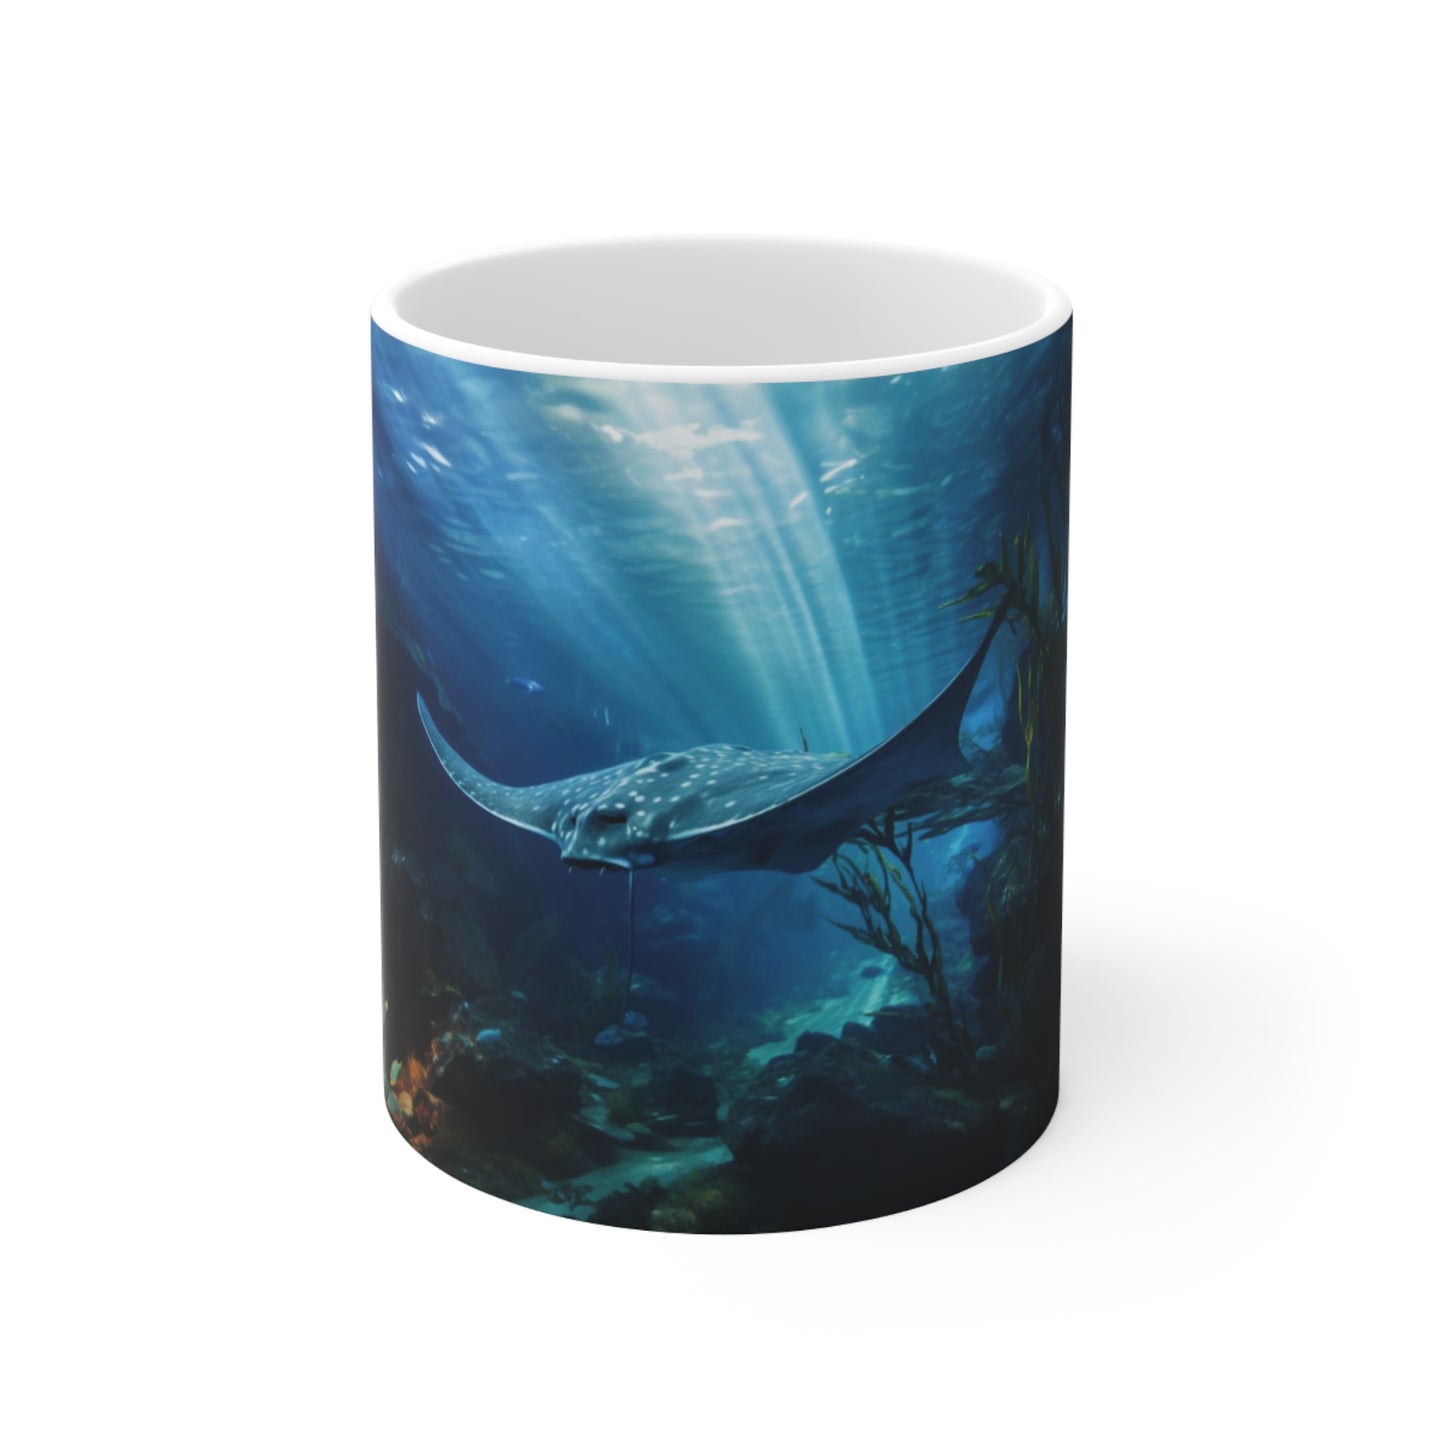 Manta Ray | Ceramic Mug 11oz